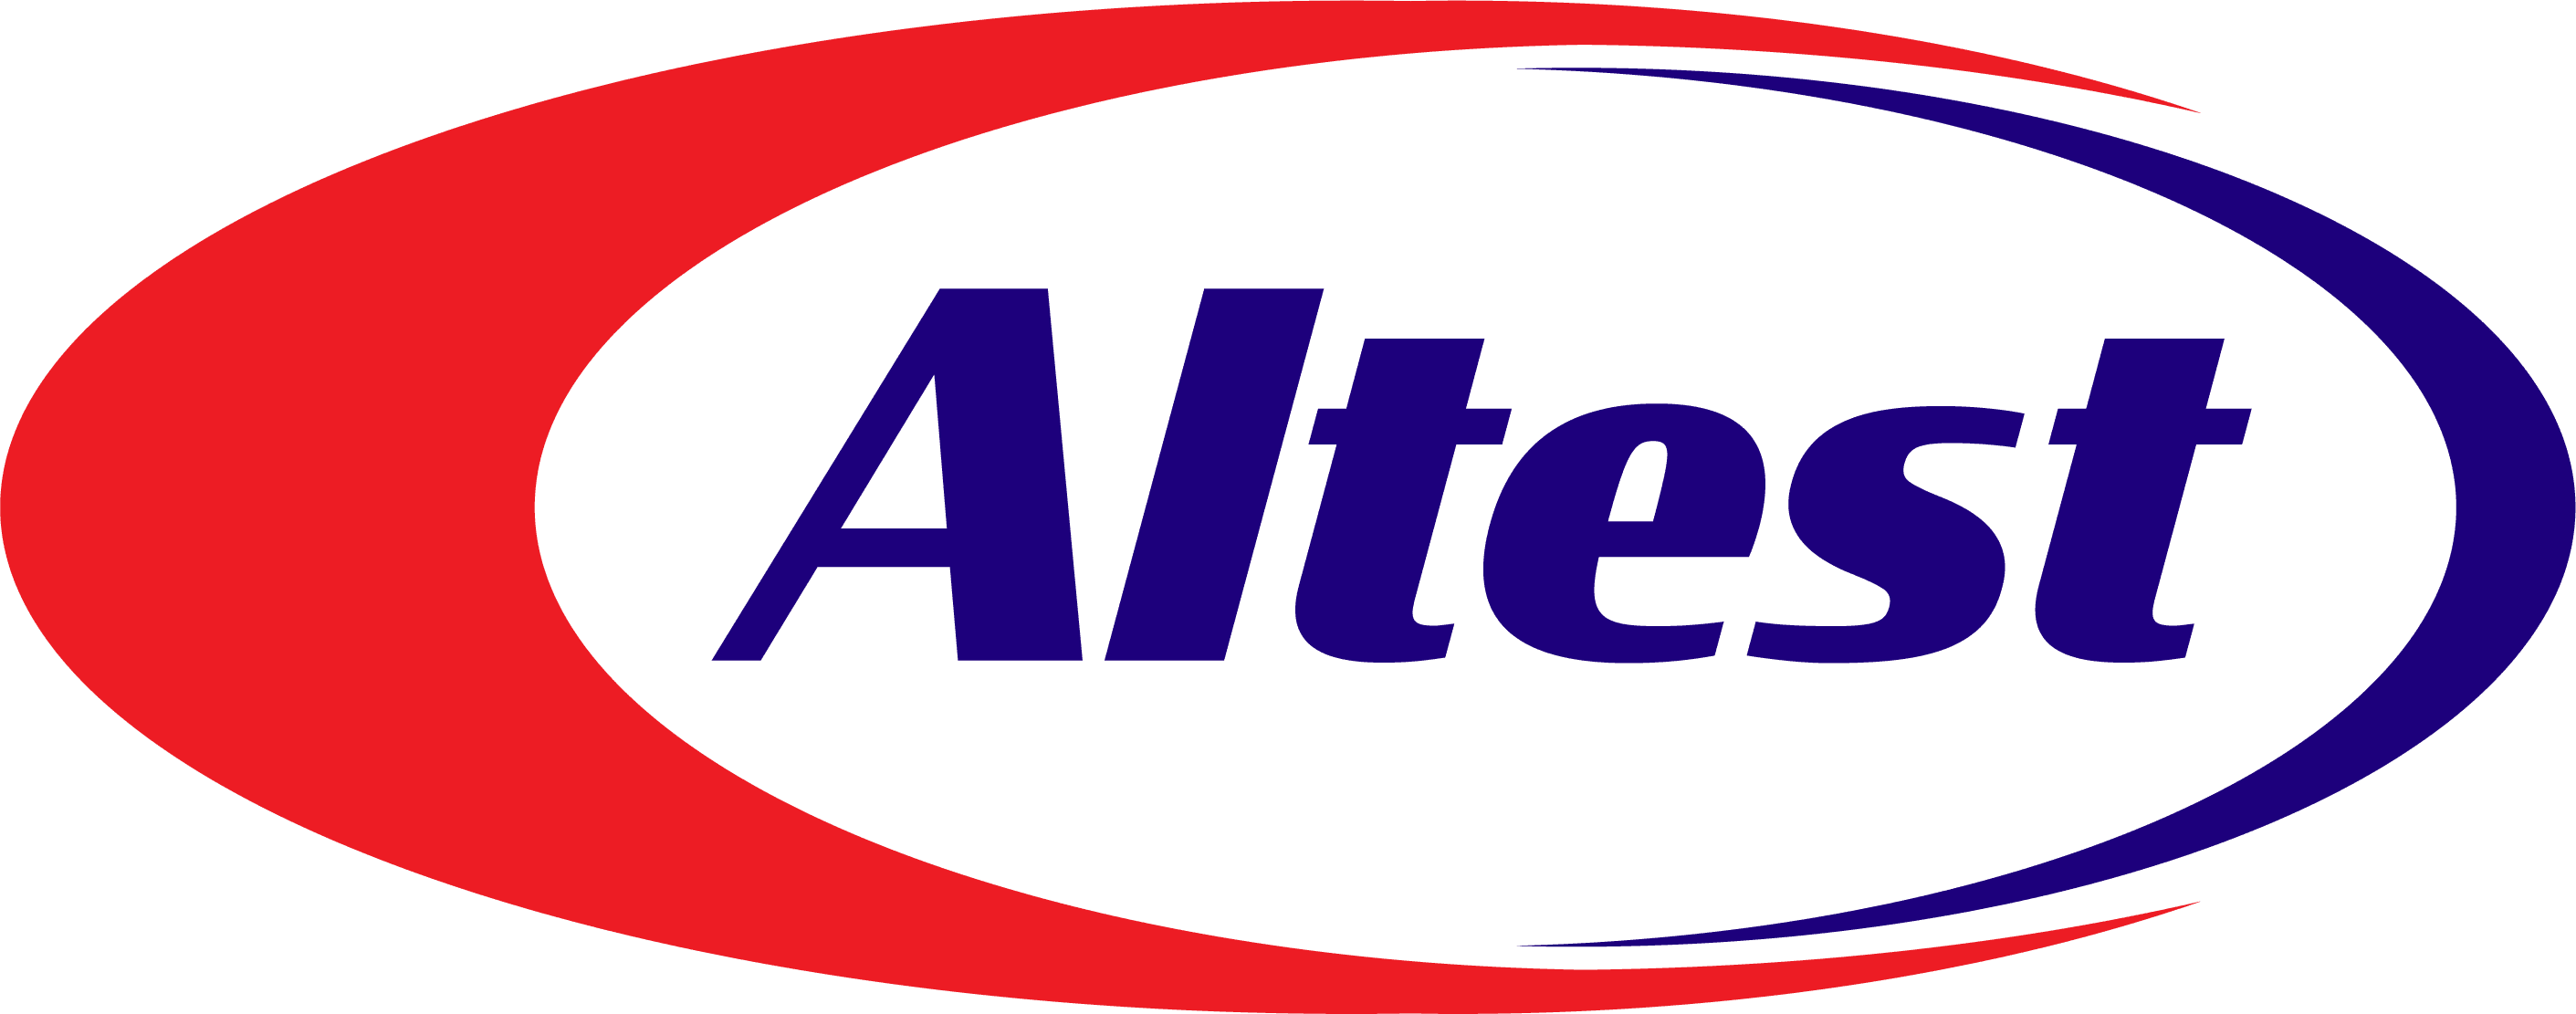 Atlest logo